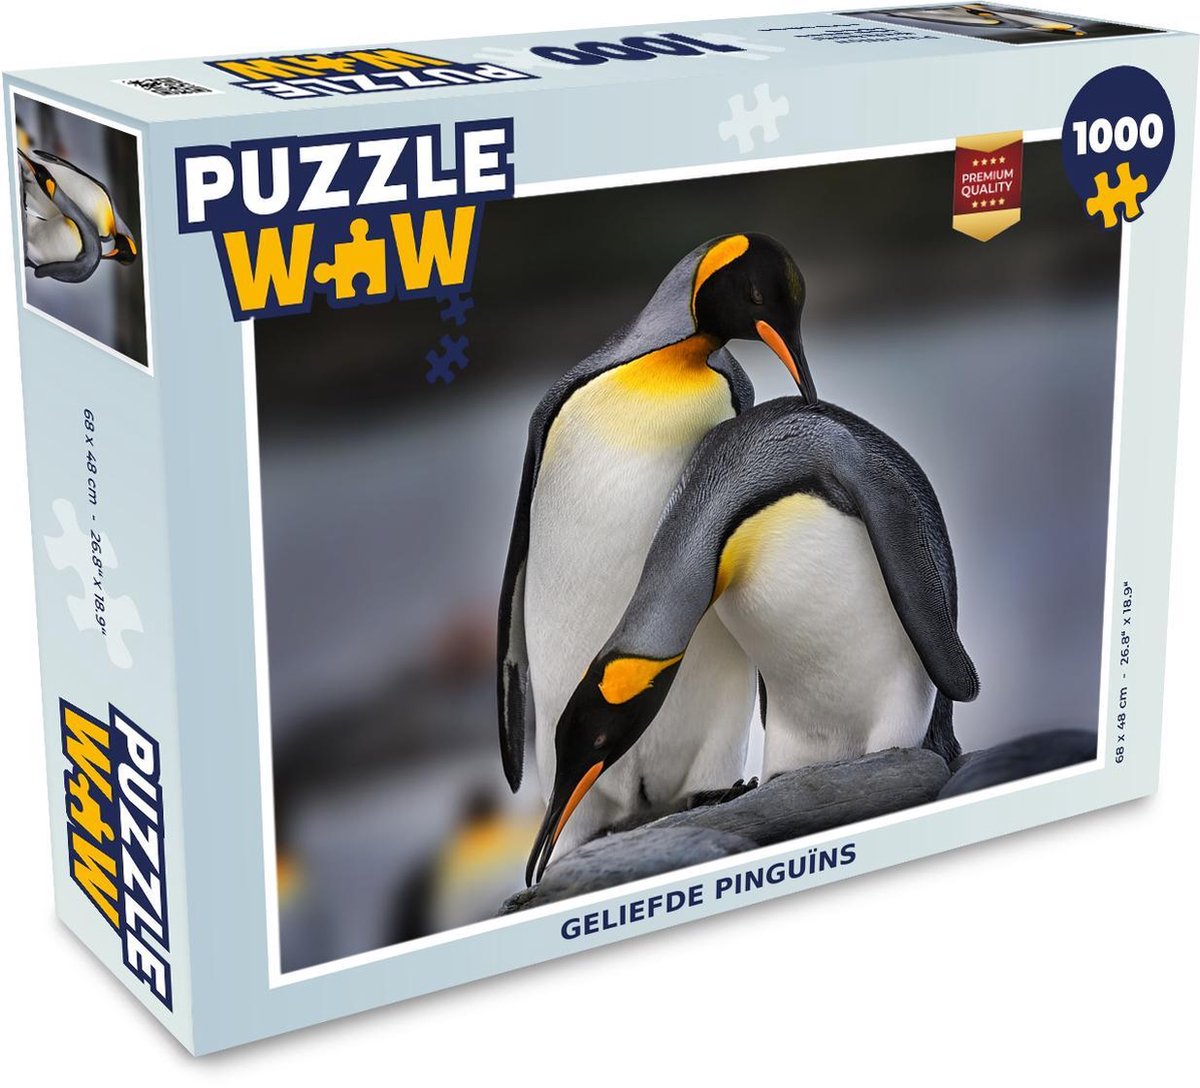 Afbeelding van product PuzzleWow  Puzzel Geliefde pinguïns - Legpuzzel - Puzzel 1000 stukjes volwassenen